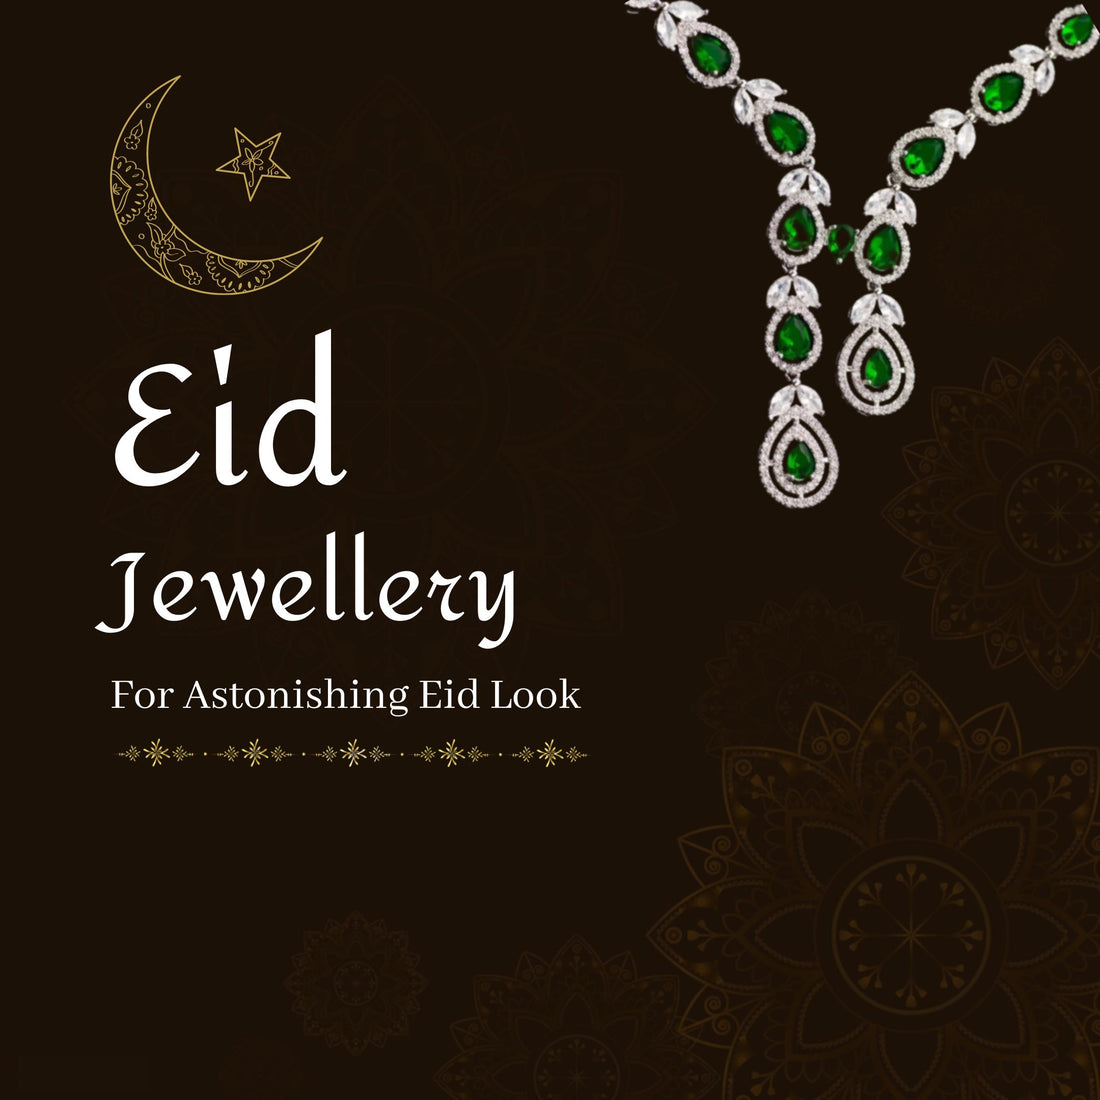 5 Eid Jewellery Trends To Follow In 2021